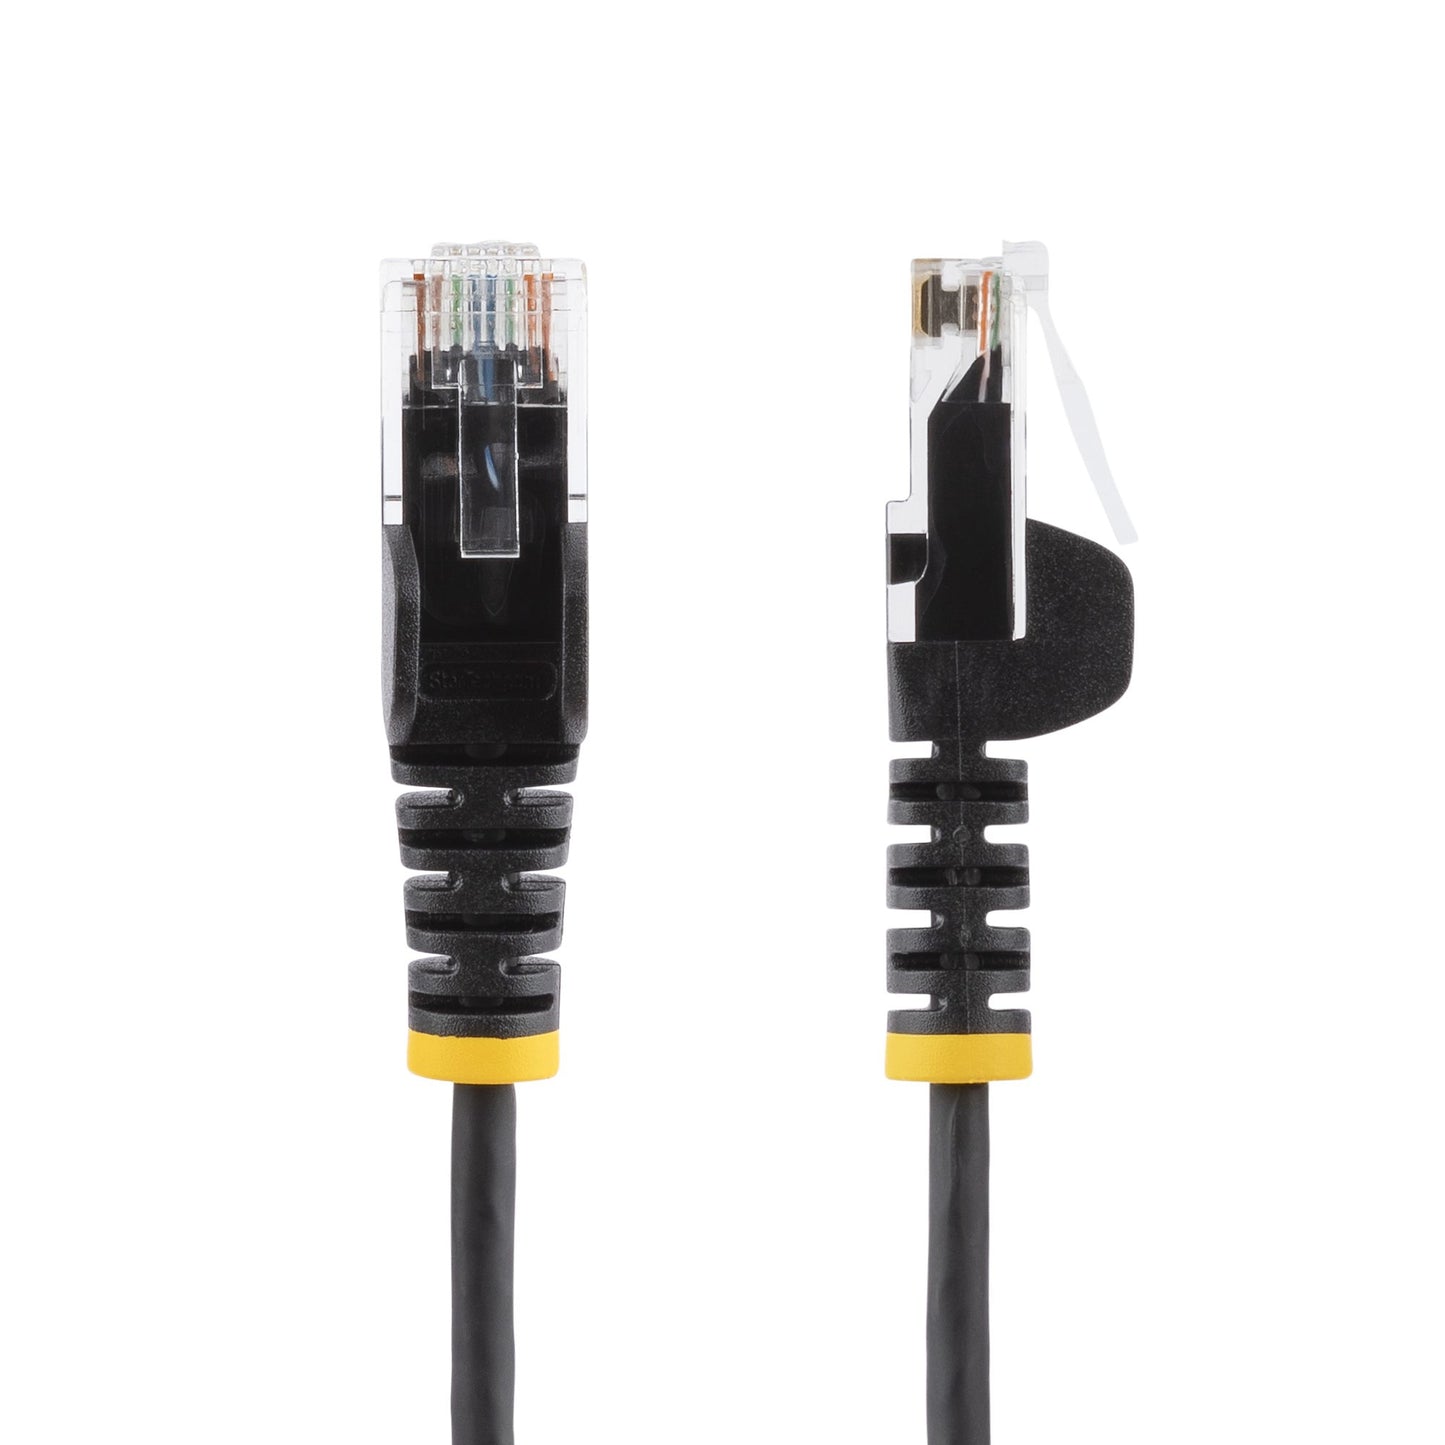 StarTech.com 2 m CAT6 Cable - Slim - Snagless RJ45 Connectors - Black-1